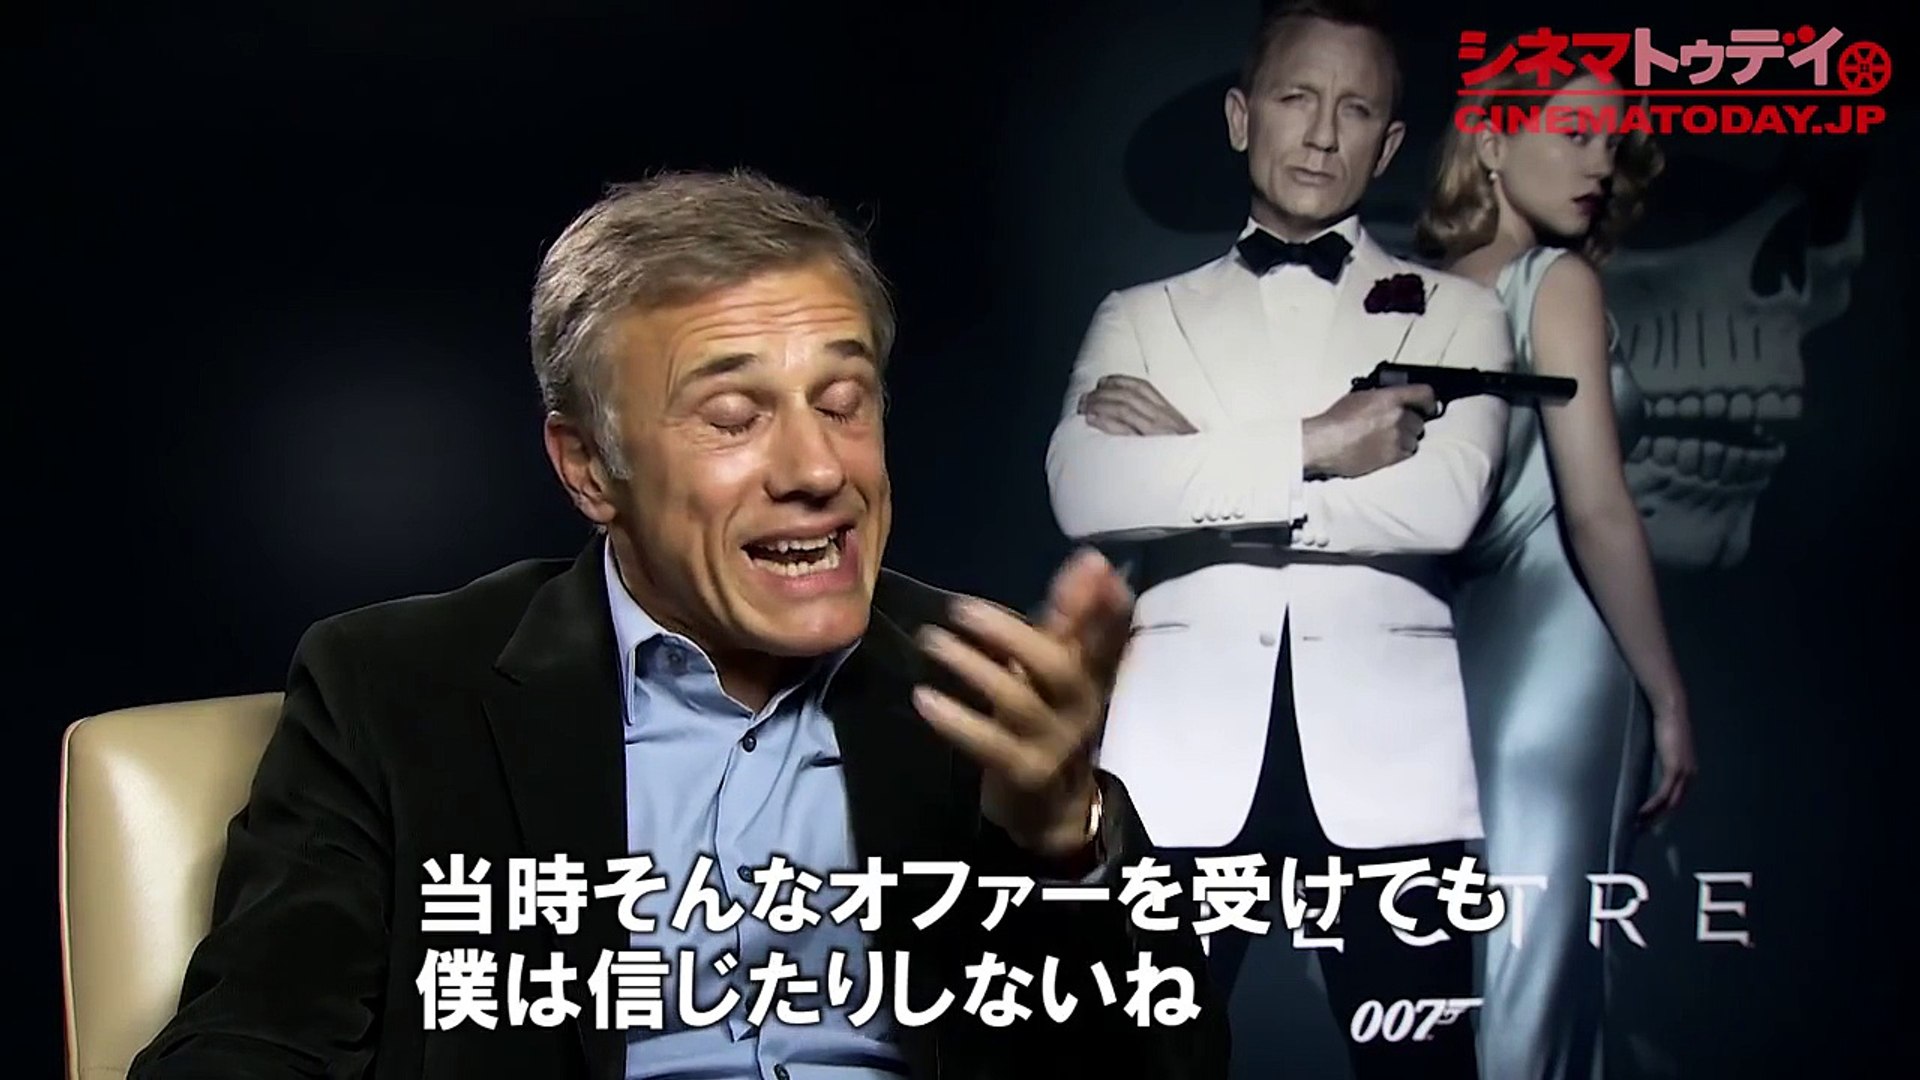 ダニエル クレイグ 最高の007ができた 007 スペクター ダニエル クレイグ クリストフ ヴァルツ インタビュー Dailymotion Video